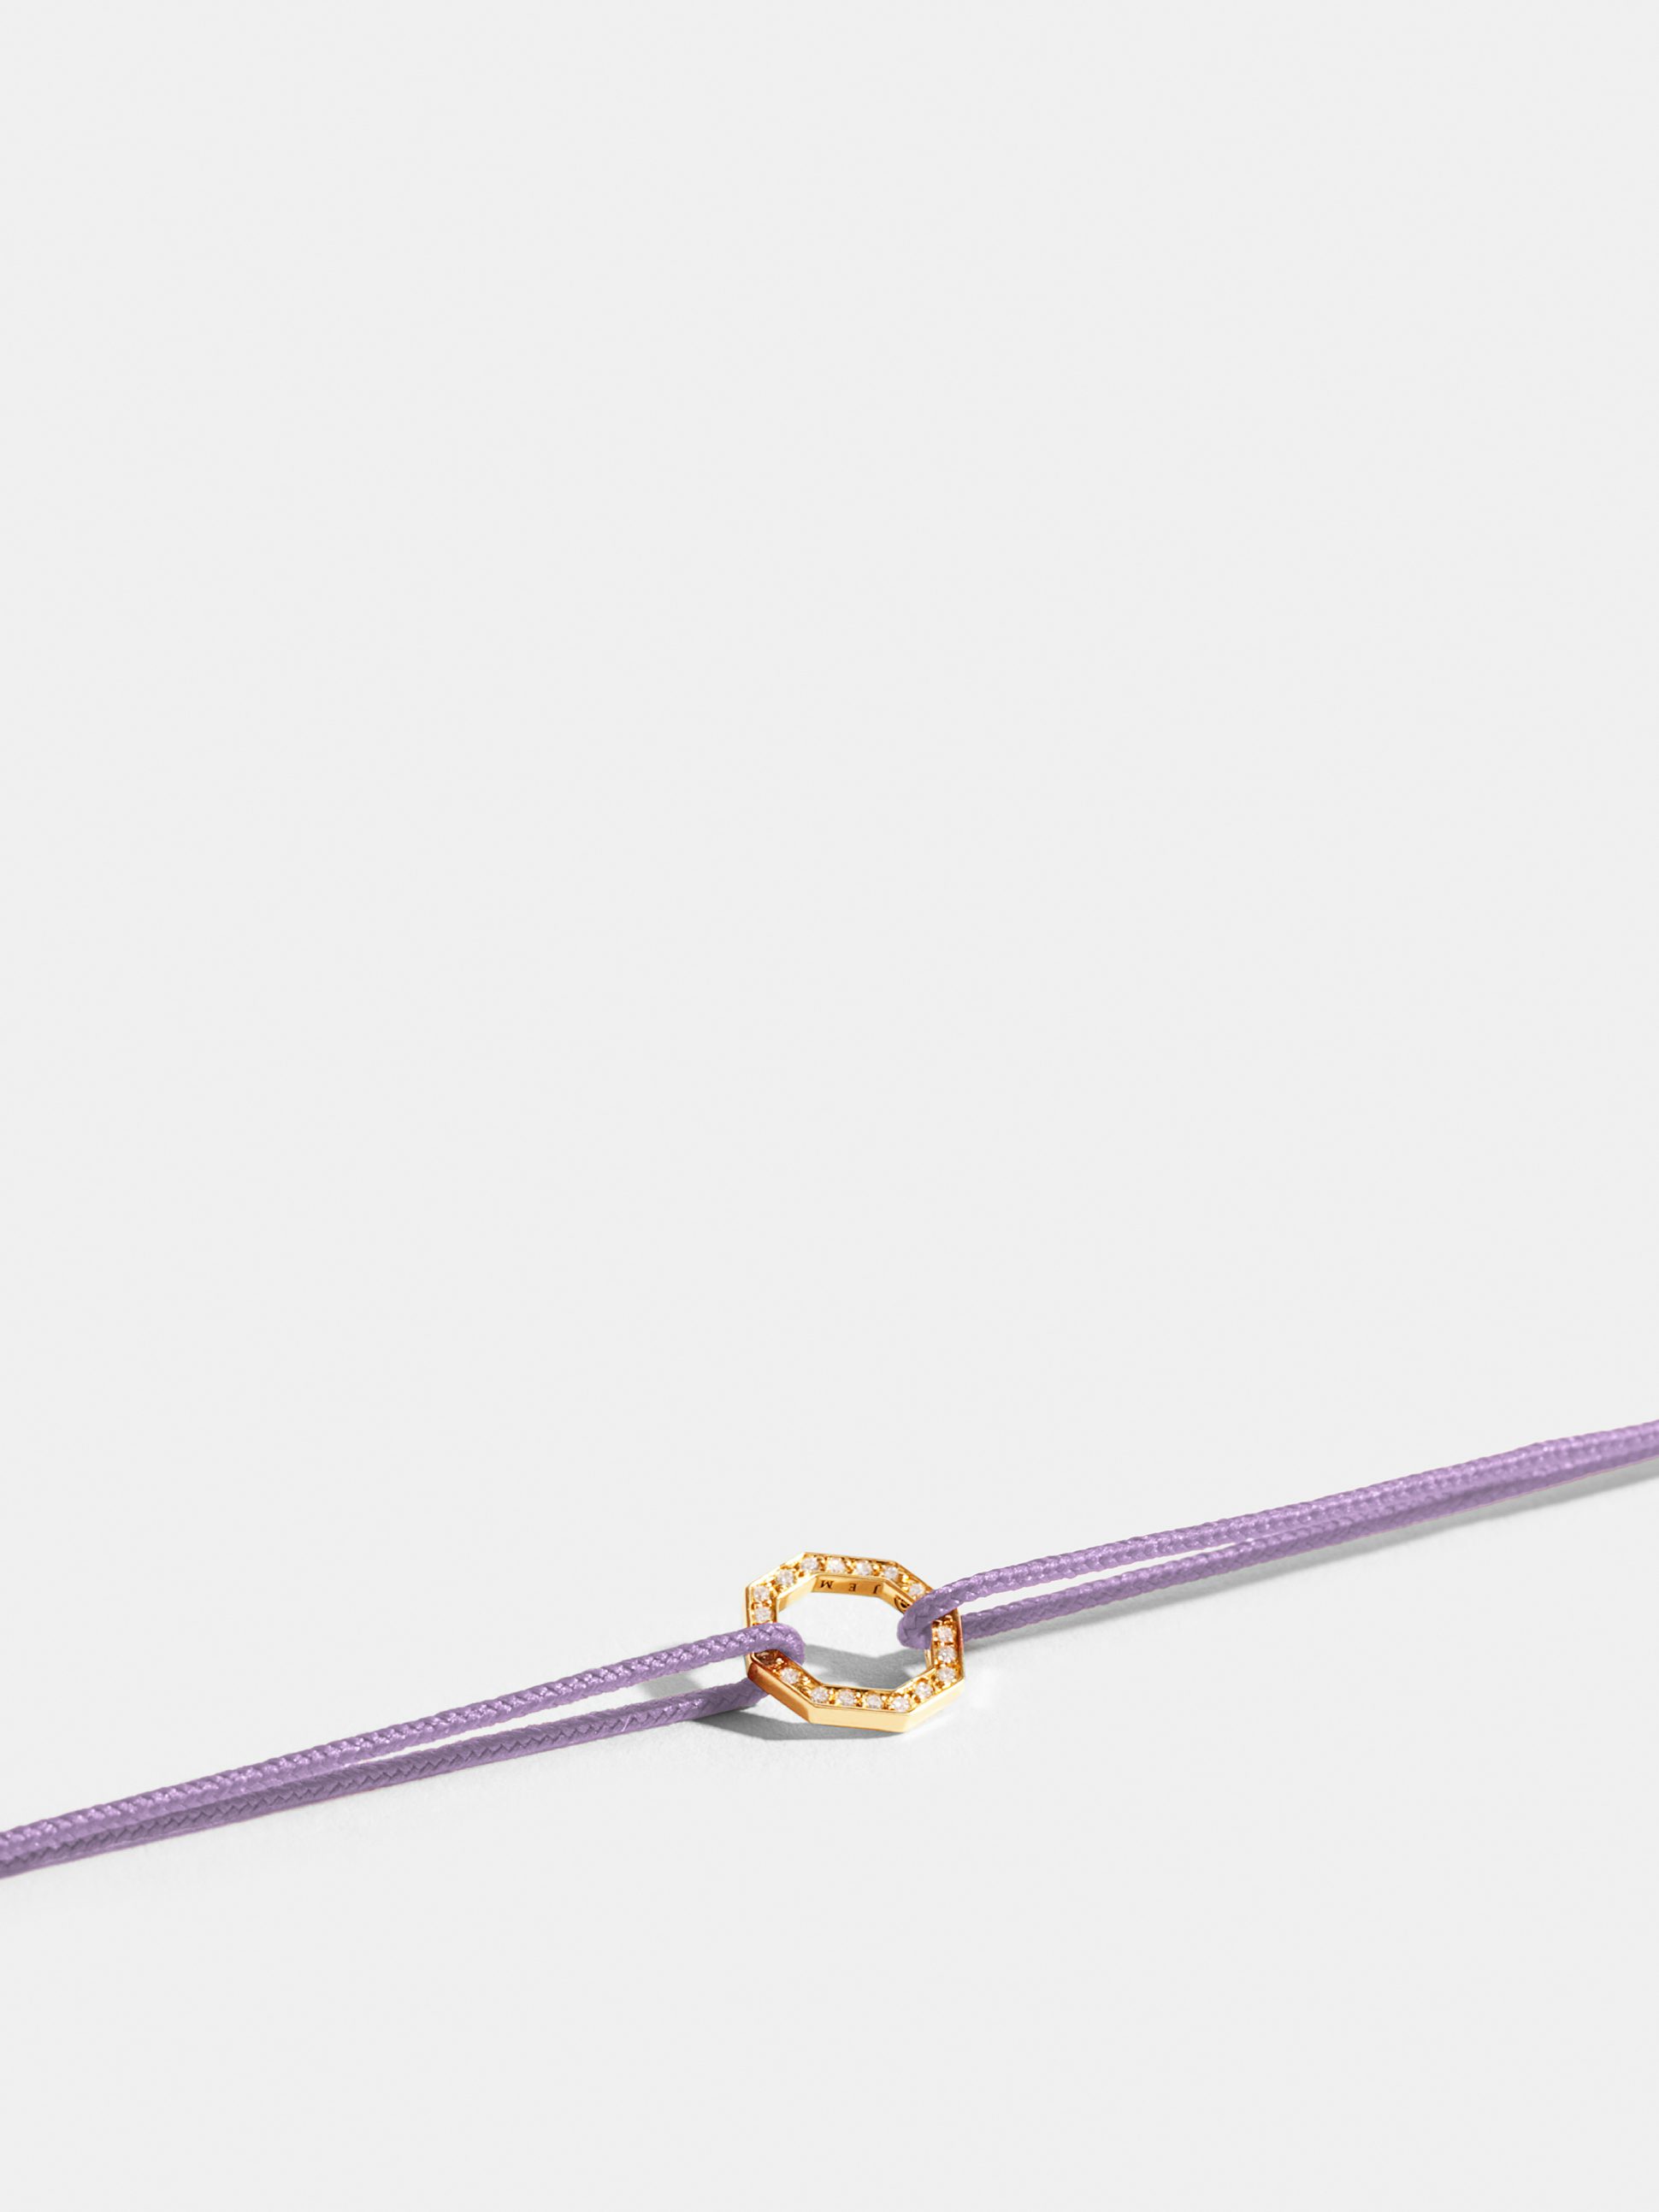 Motif Octogone en Or jaune éthique 18 carats certifié Fairmined et pavé de diamants de synthèse, sur cordon violet lilas.